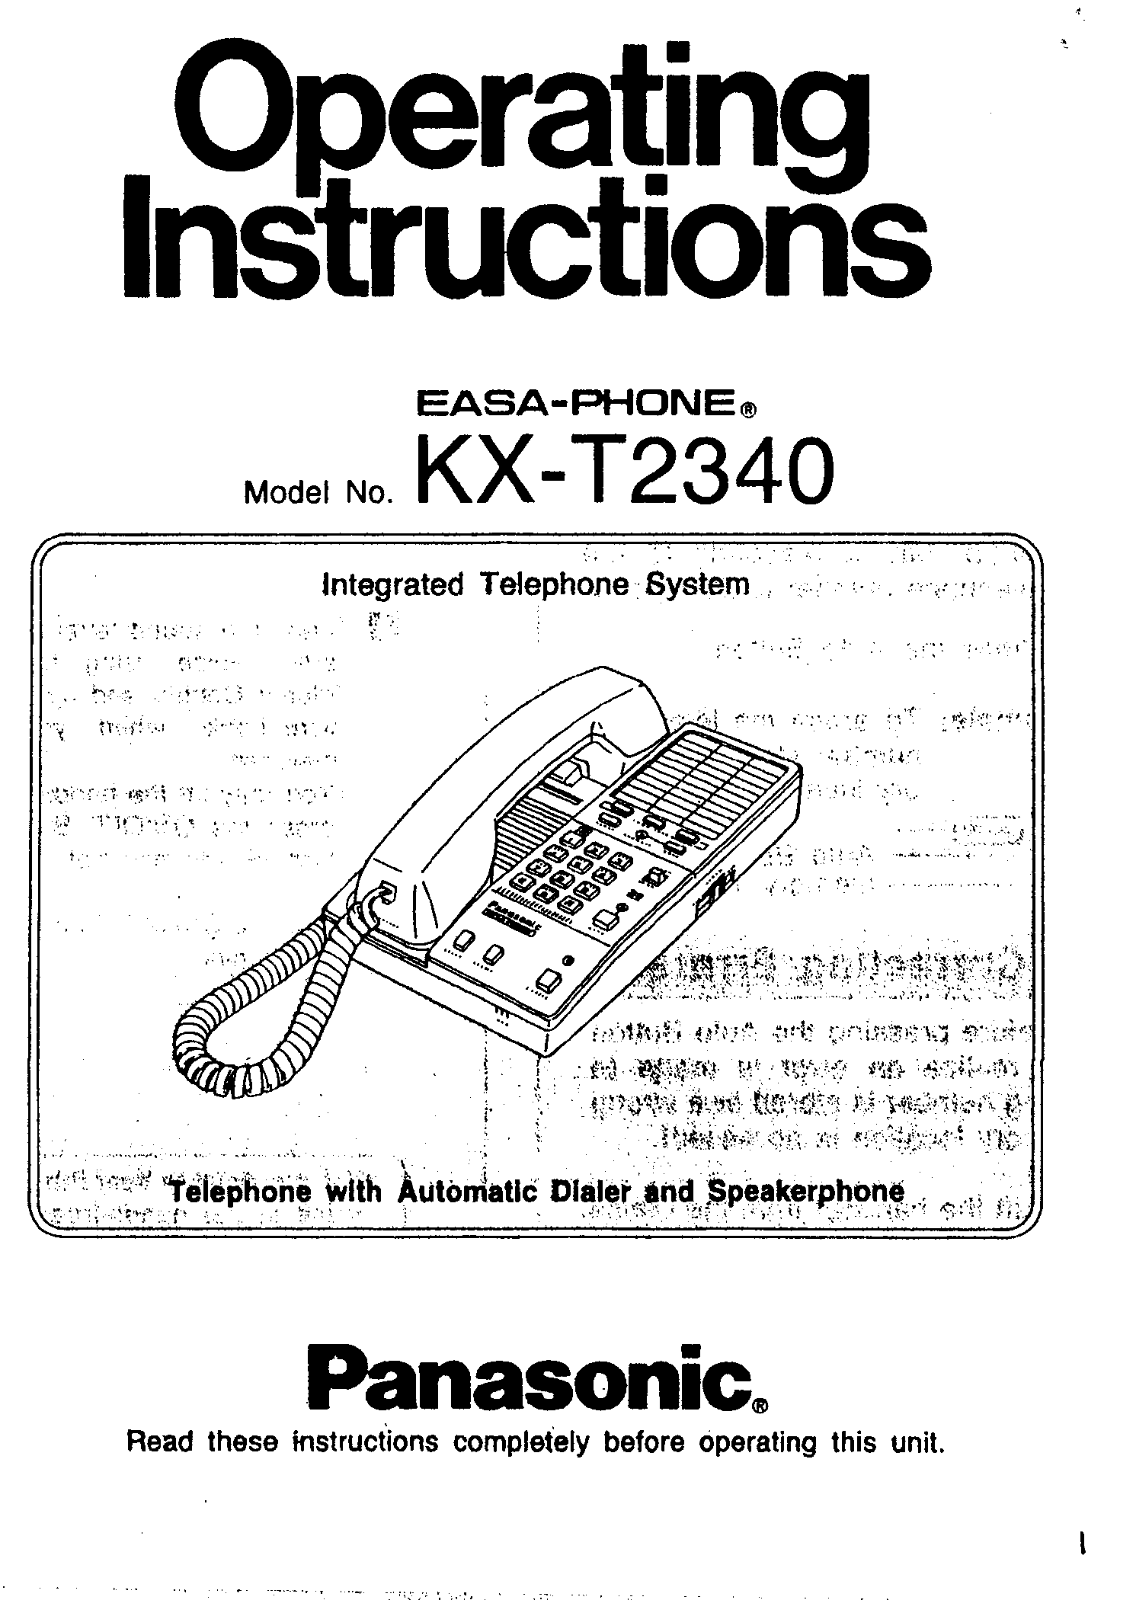 Panasonic kx-t2340 Operation Manual